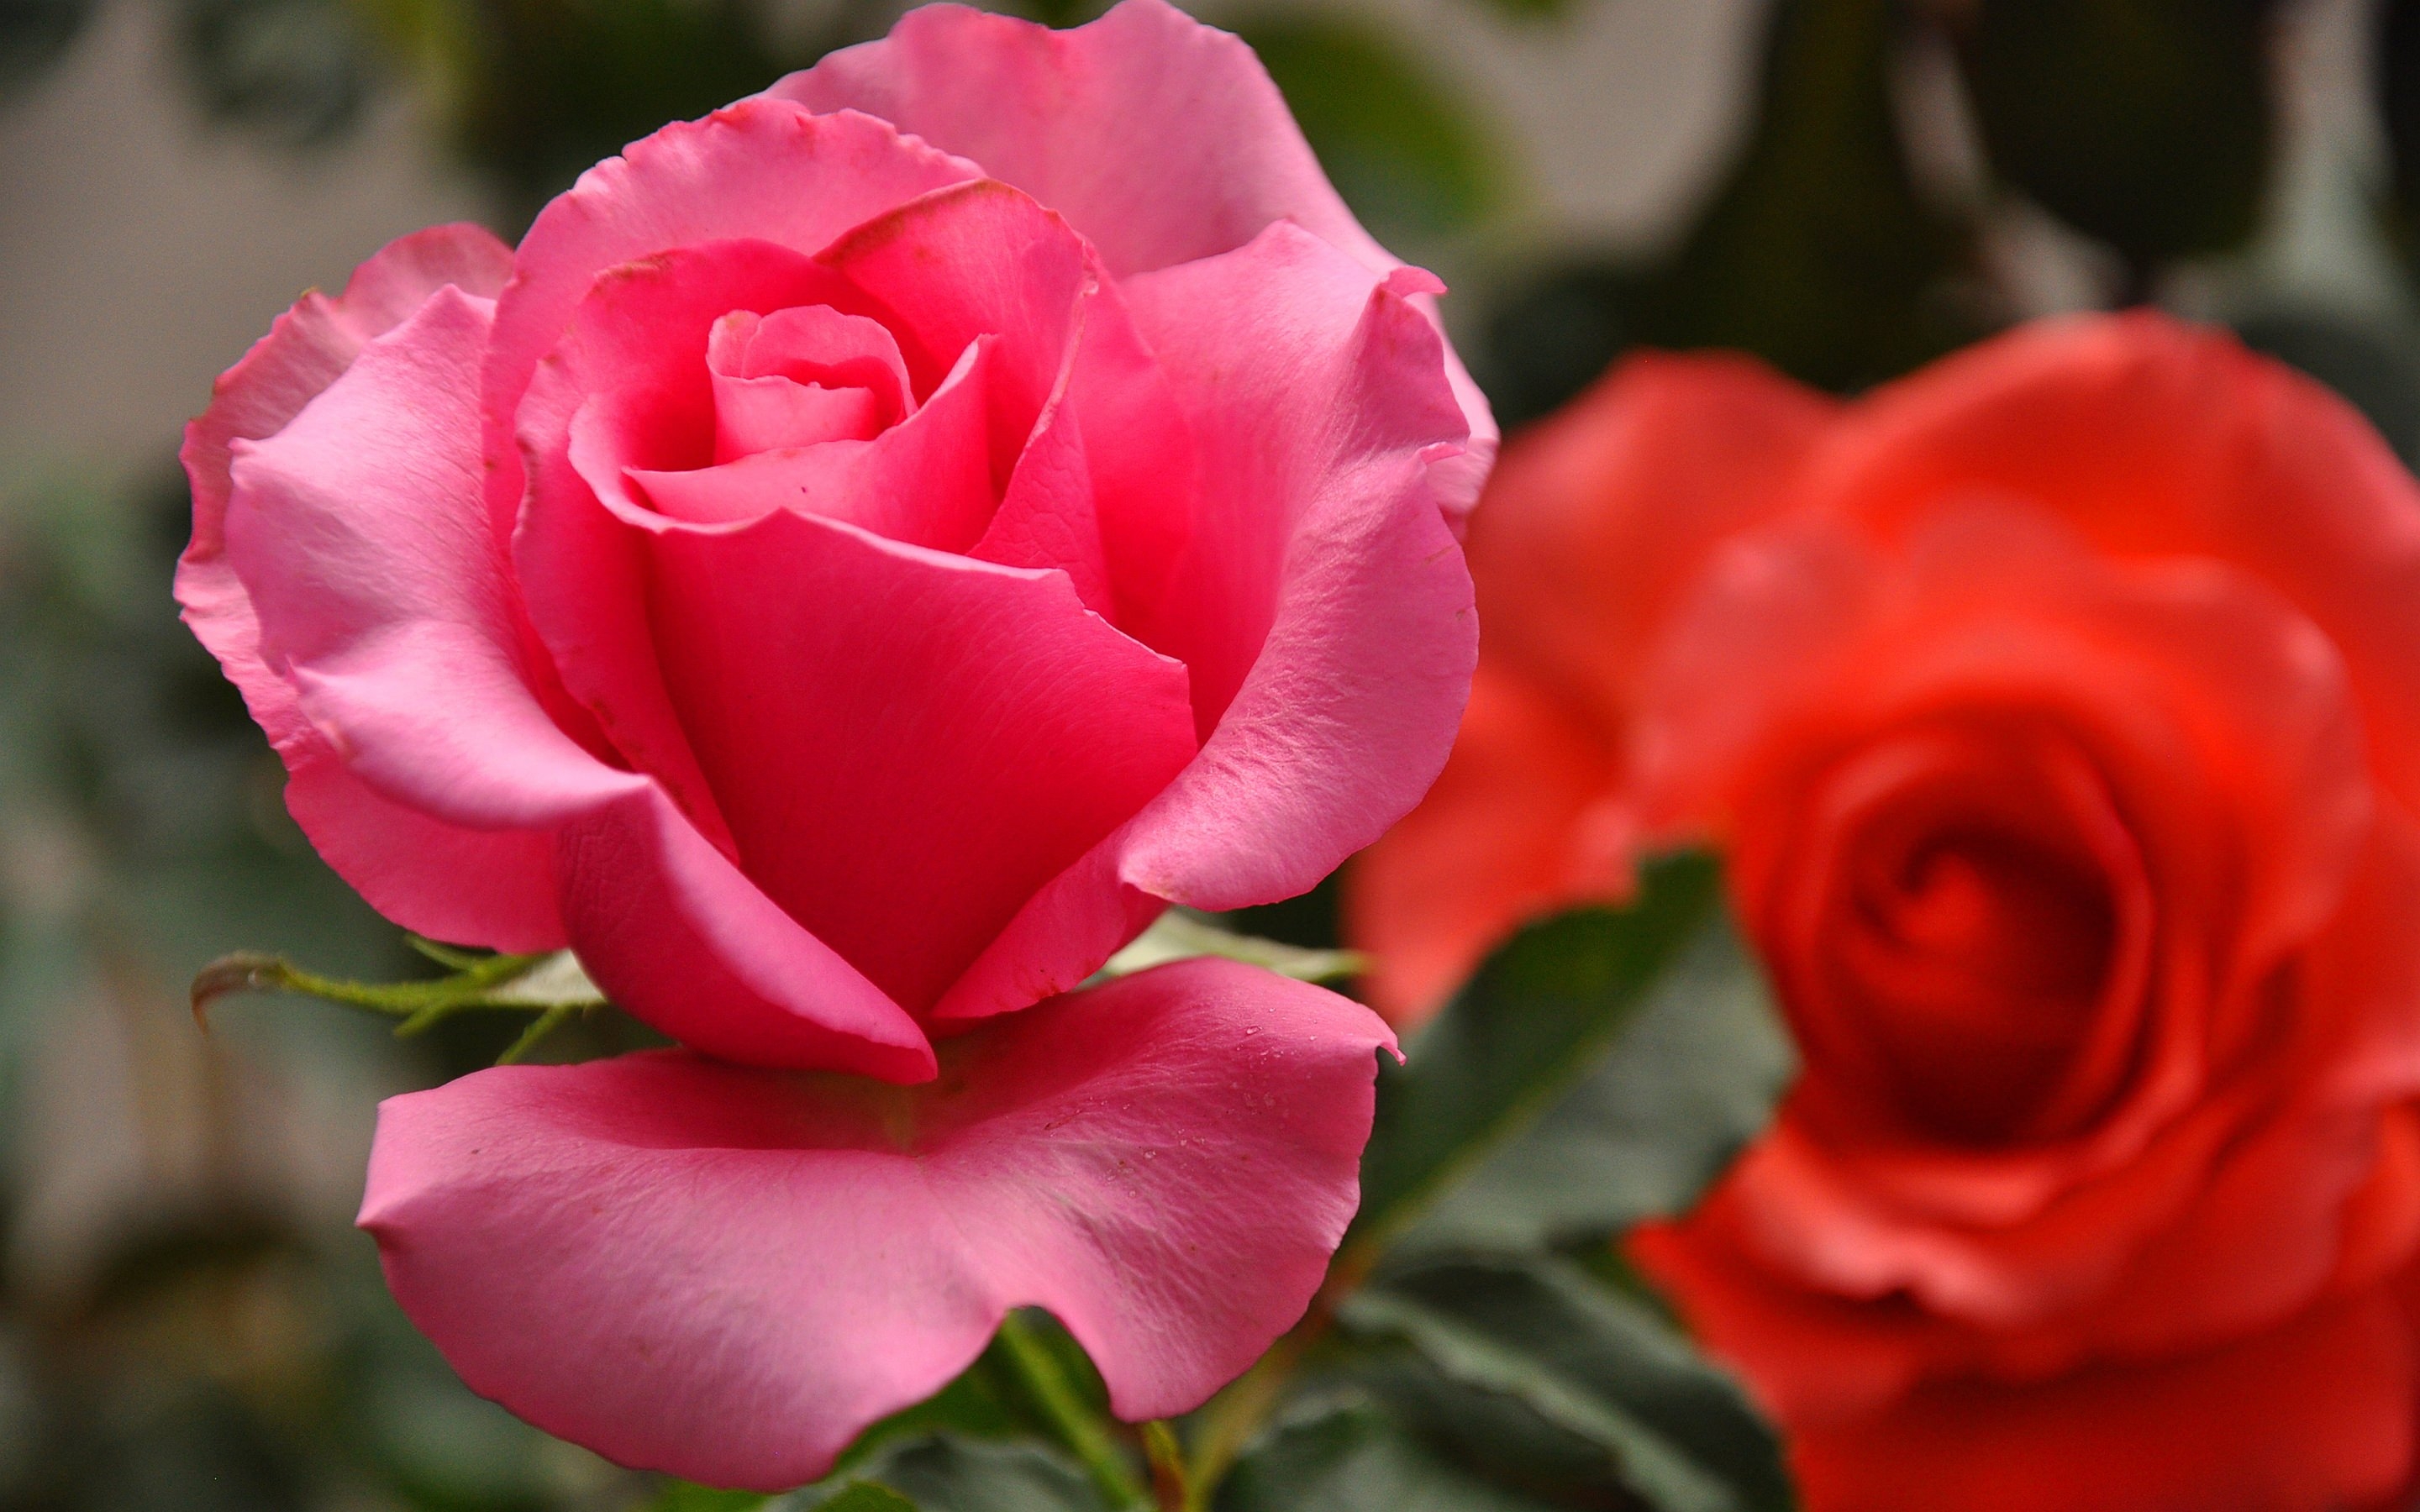 cute rose wallpaper,flower,petal,garden roses,flowering plant,rose